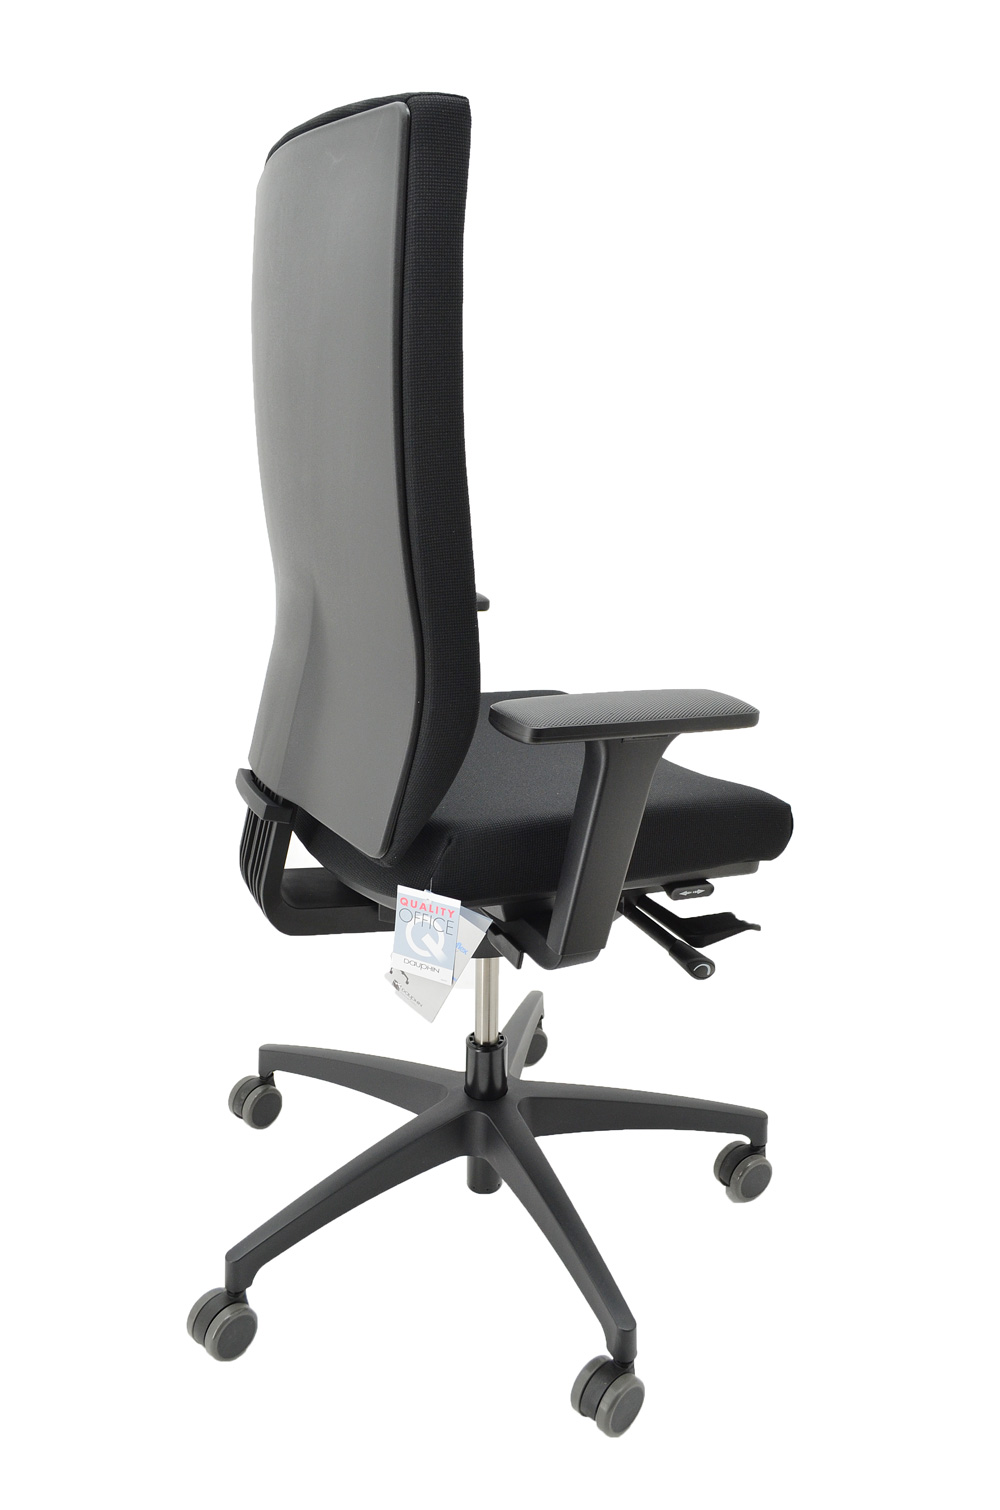 Dauphin - Drehstuhl @Just - hohe Rückenlehne - Sitz schwarz - Fußkreuz  Kunststoff graphitschwarz   - Bürostühle, Drehstühle,  Chefsessel und Kinderstühle günstig und sofort ab Lager